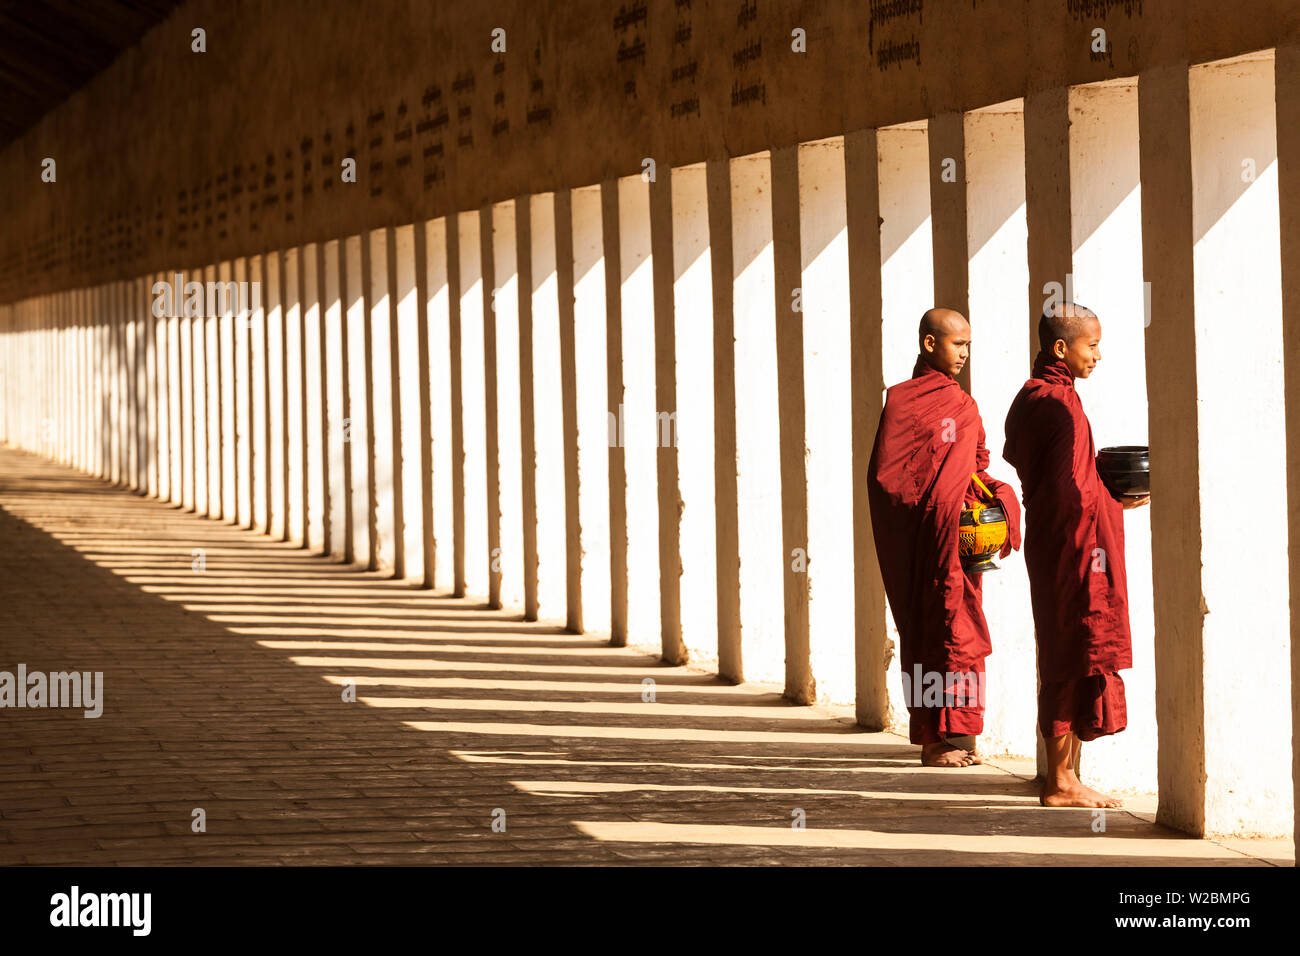 Des moines dans la Pagode Shwezigon allée, Bagan (Pagan), le Myanmar (Birmanie) Banque D'Images